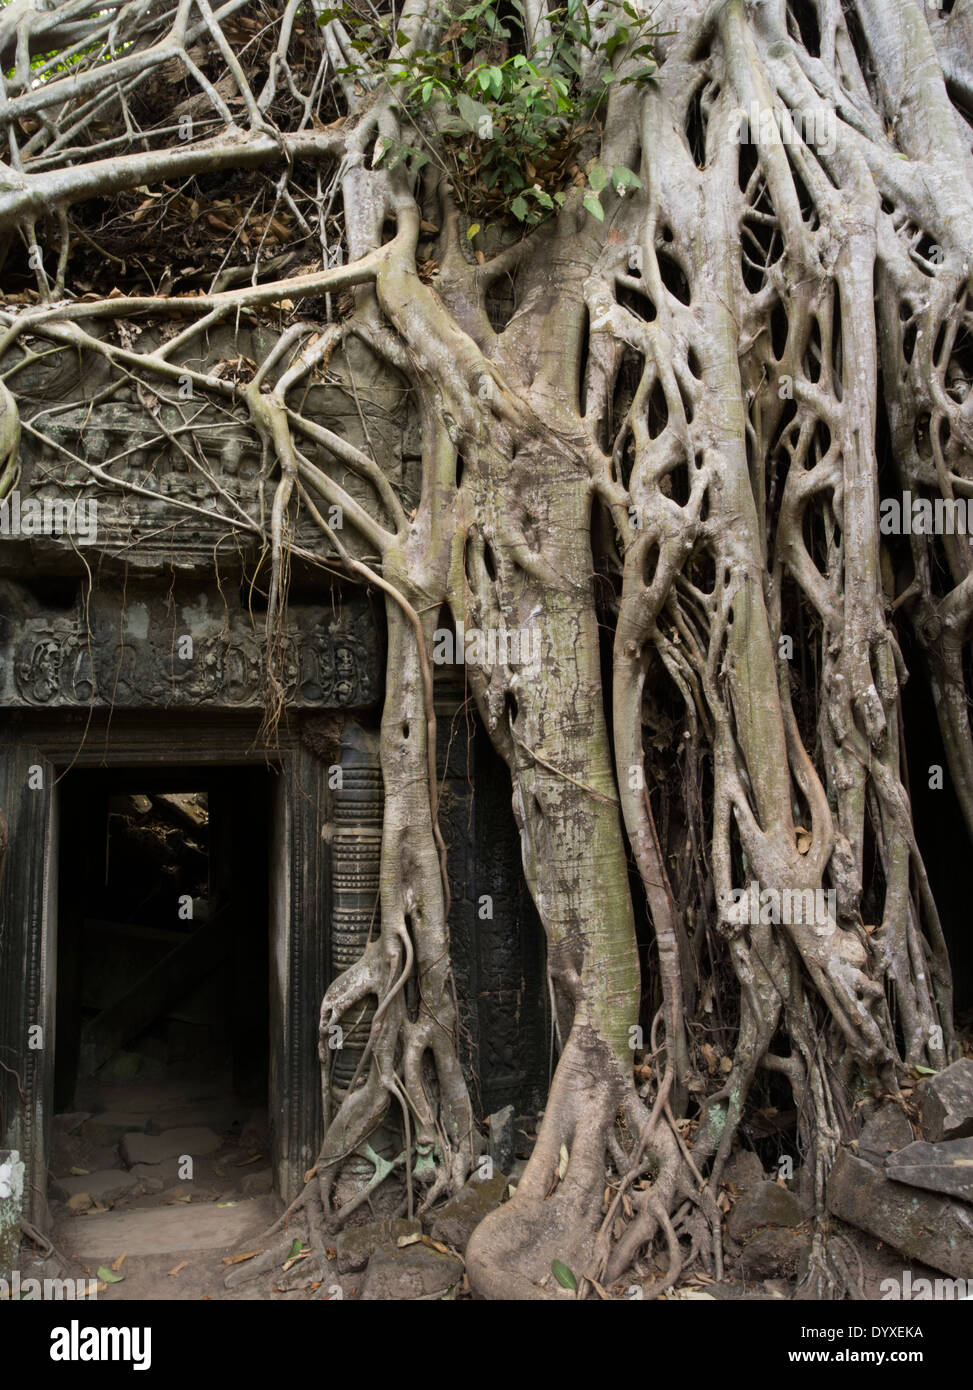 Ta Prohm temple ruine dans la forêt. Siem Reap, Cambodge - à partir de la racine de l'arbre à soie cotton tree ou thitpok - Emplacement de Tomb Raider Banque D'Images